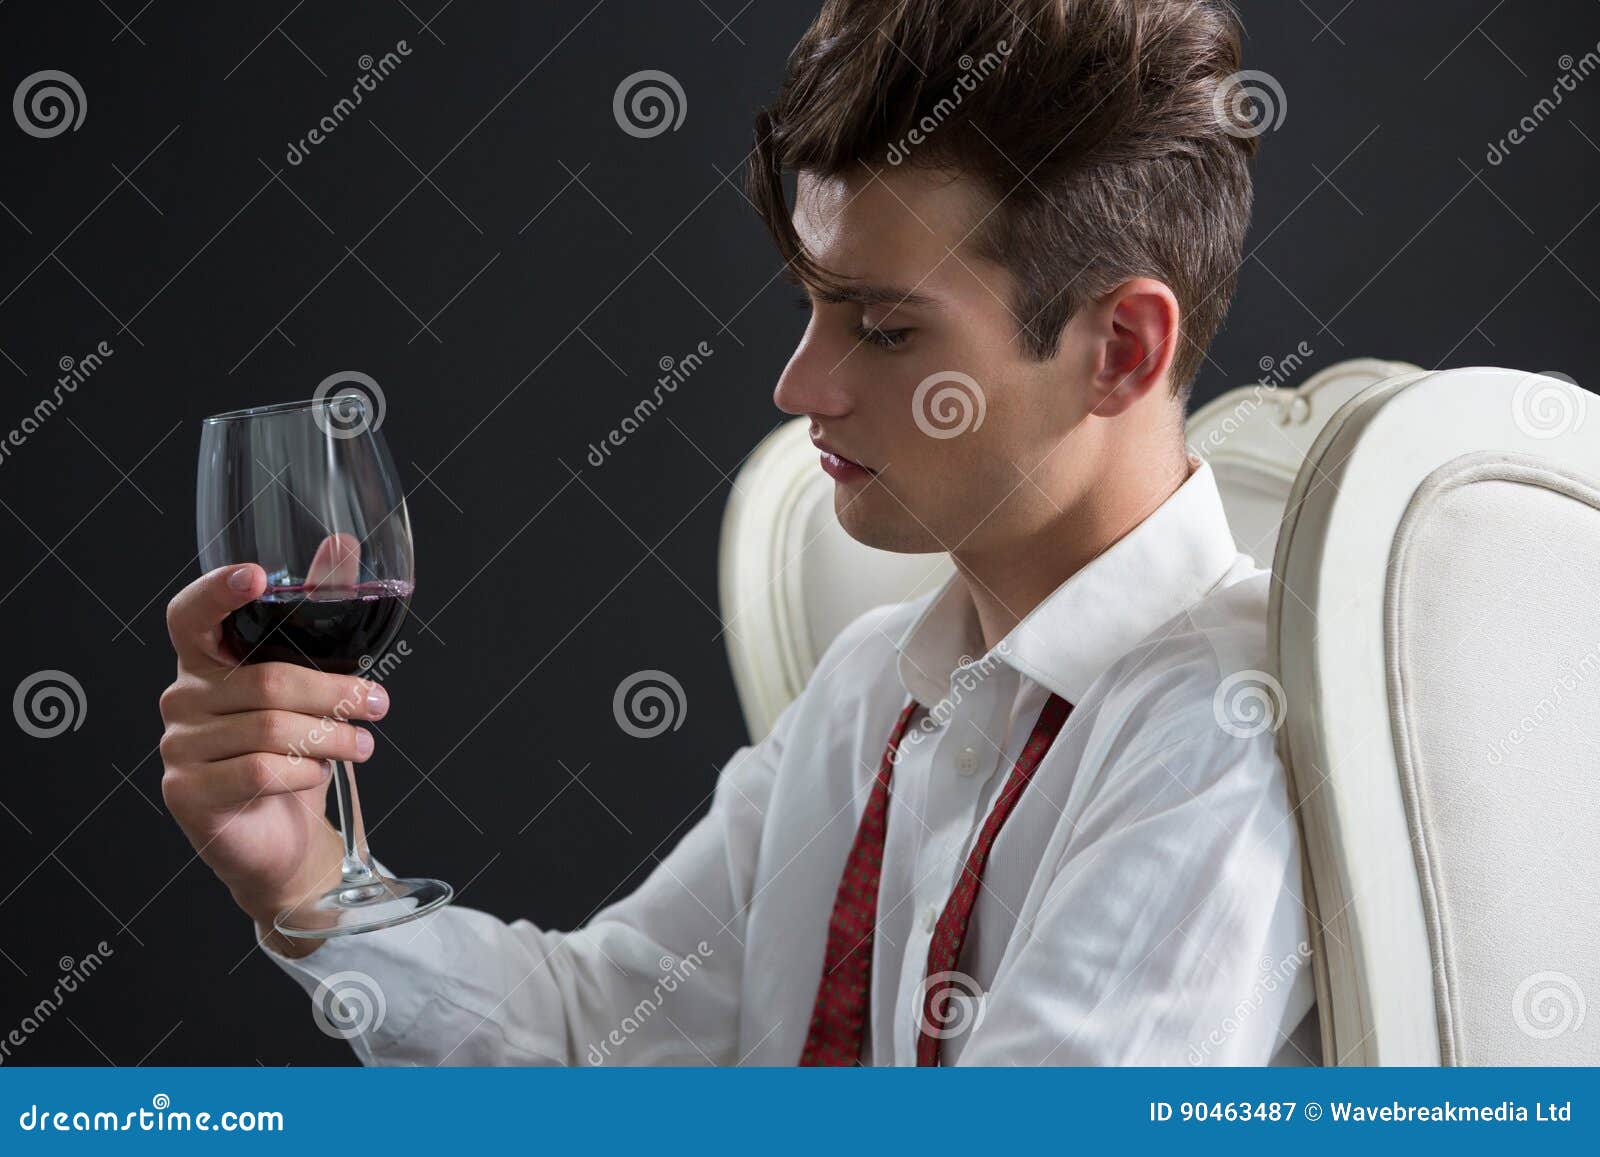 Мужчина с бокалом вина. Парень с бокалом. Парень с бокалом вина. Парень держит бокал. Человек сидит в стакане.